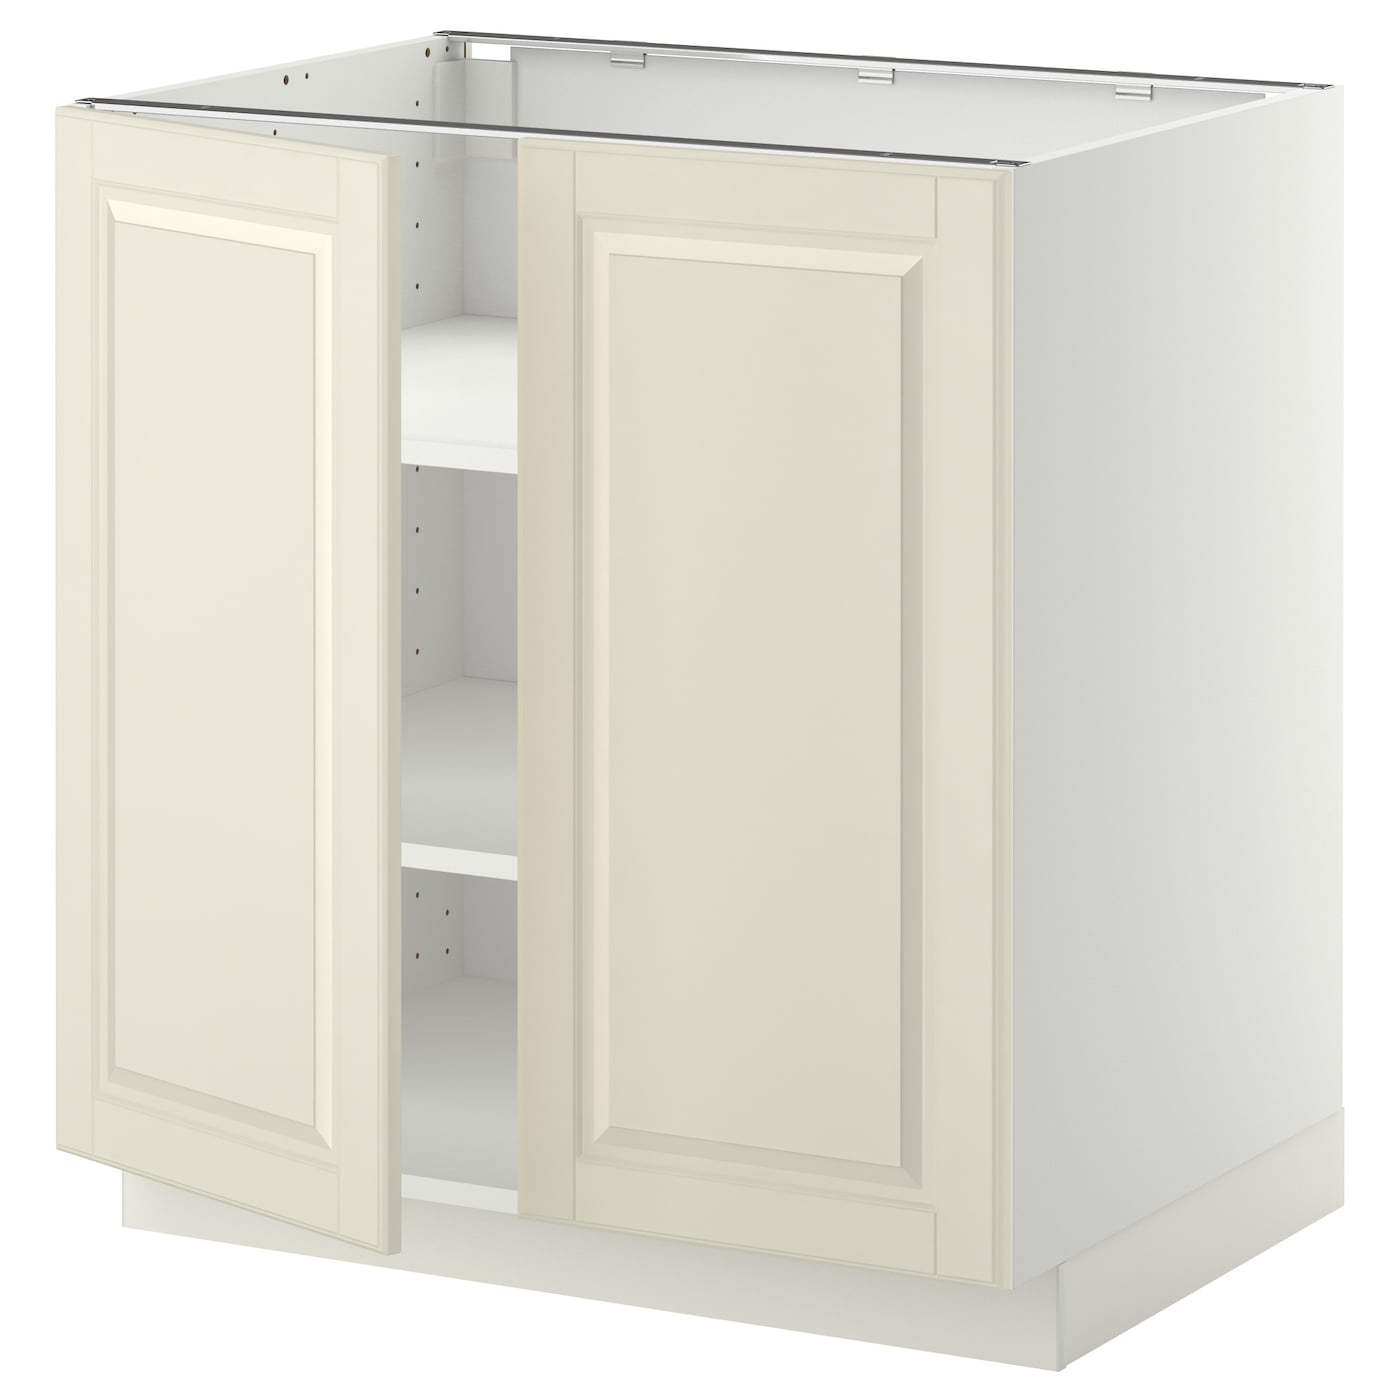 Напольный шкаф - IKEA METOD, 88x62x80см, белый/светло-бежевый, МЕТОД ИКЕА